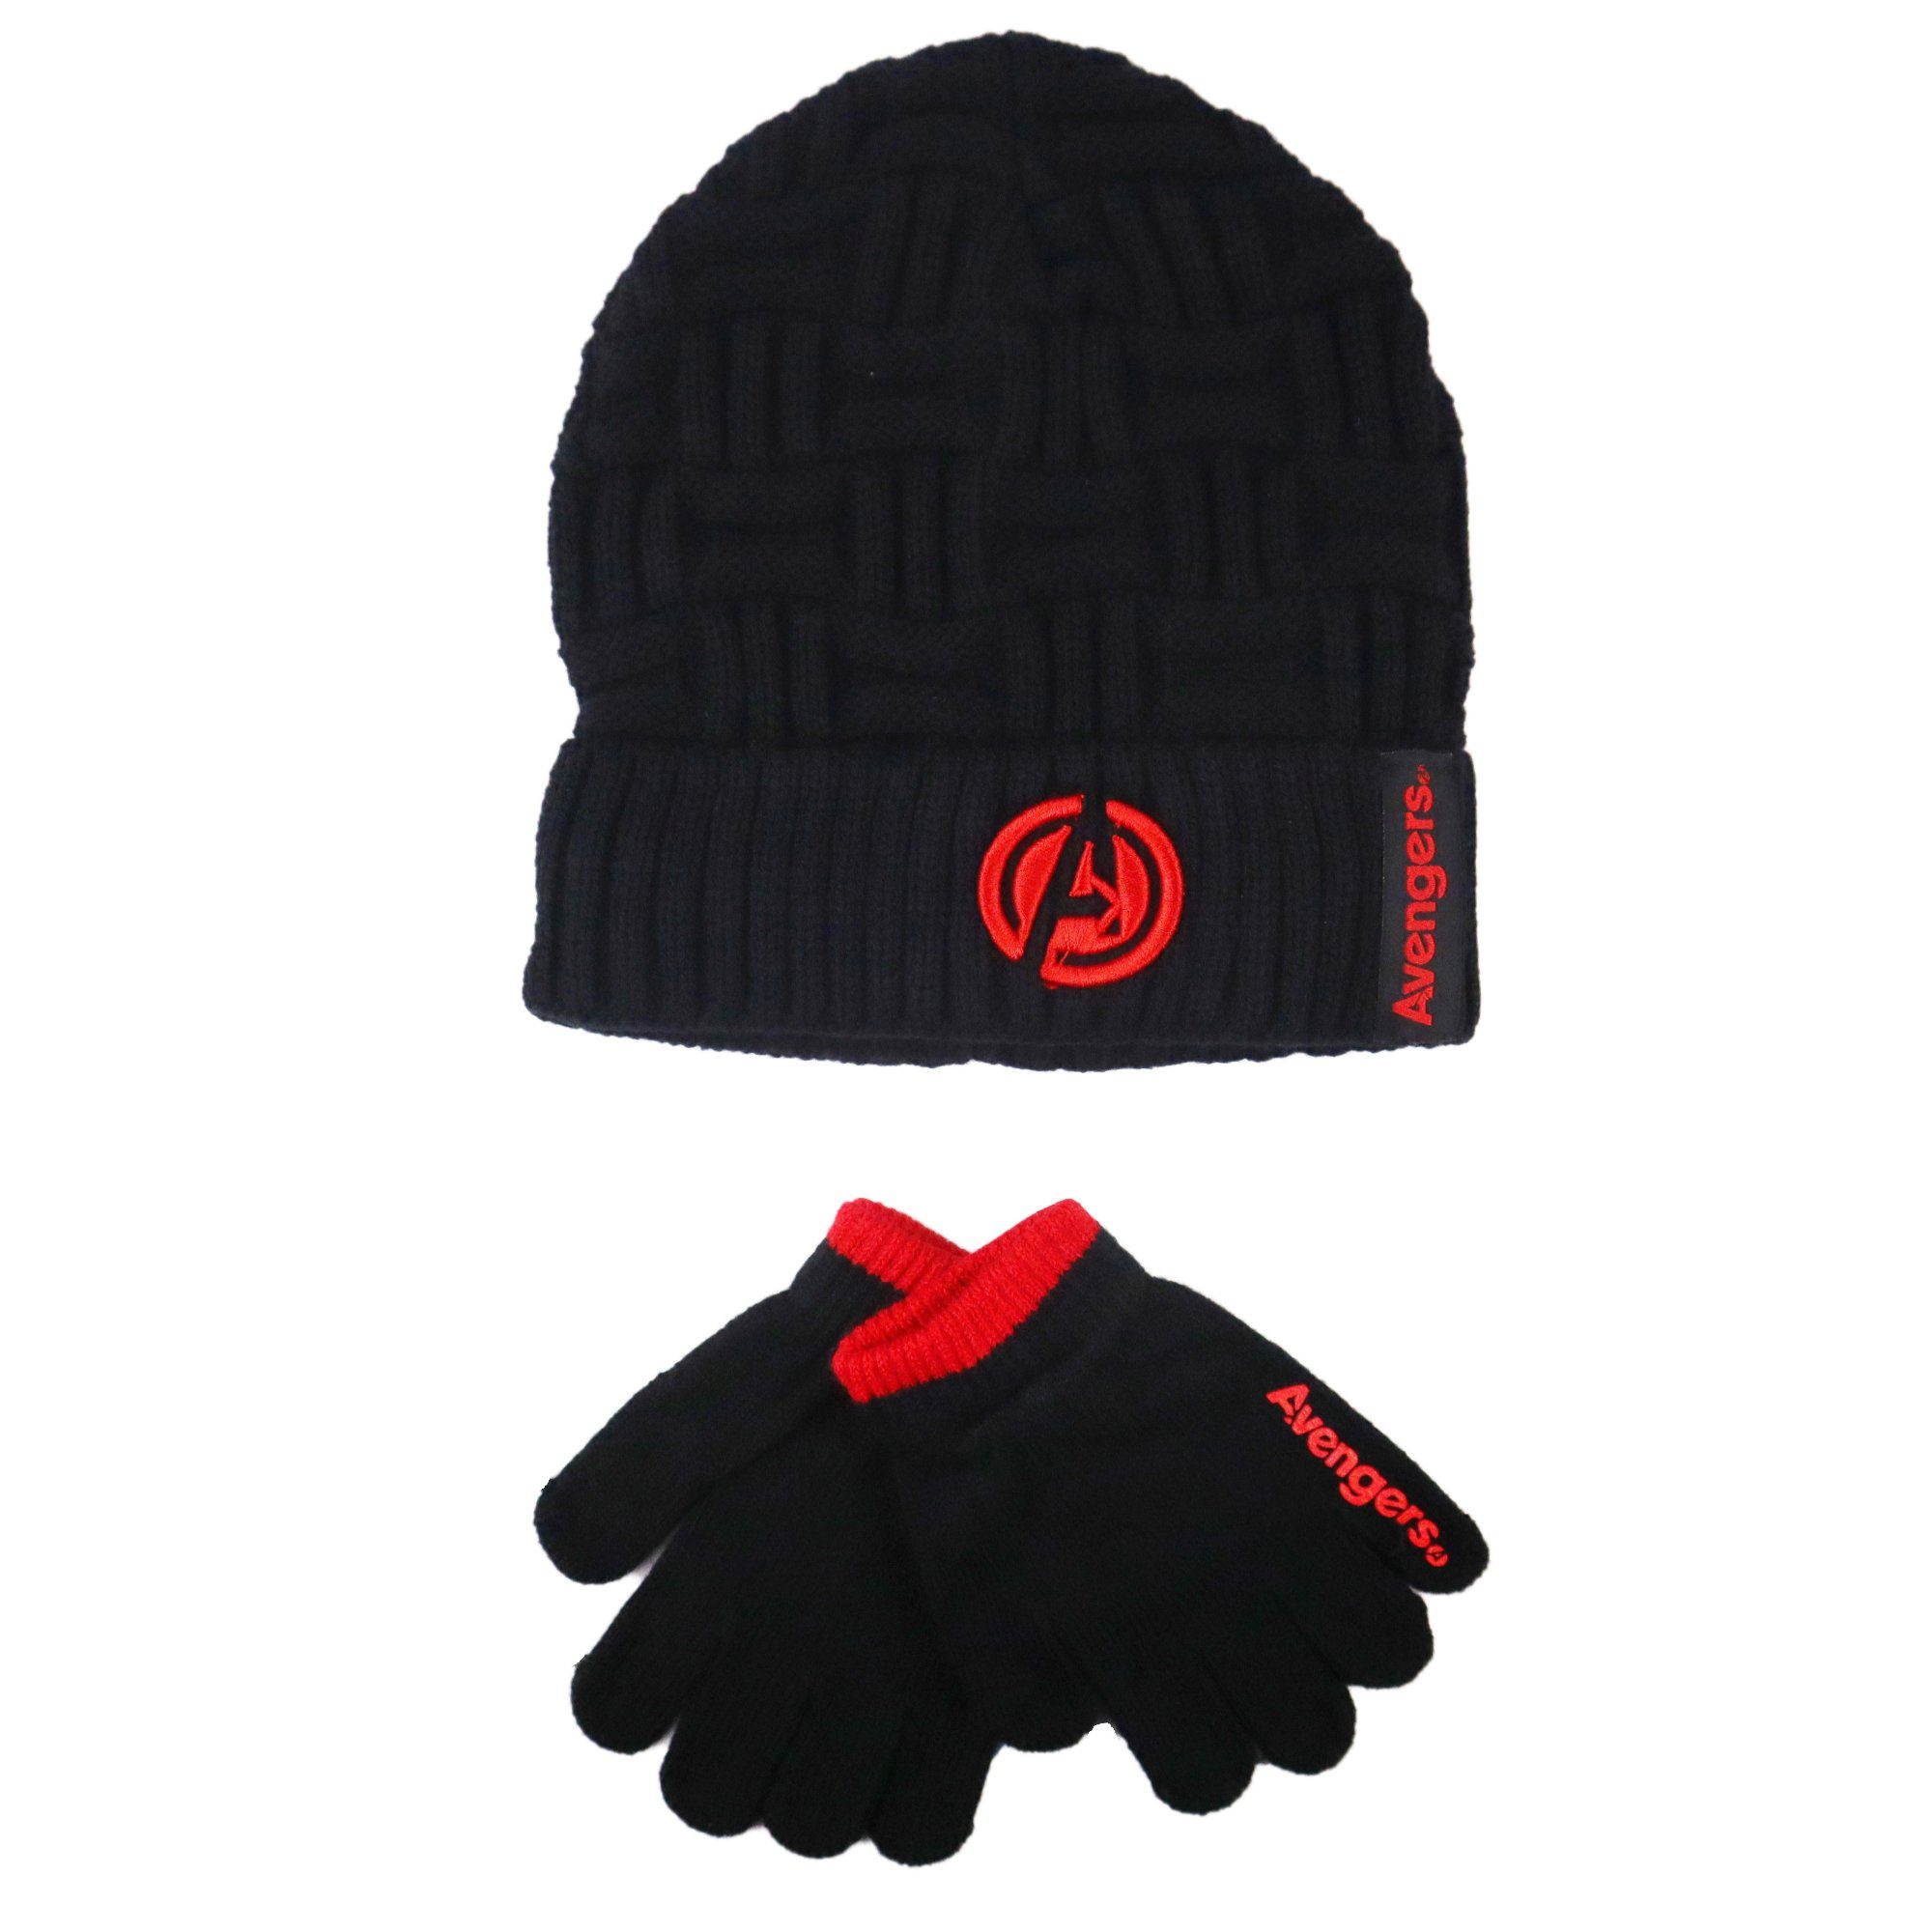 Günstiger Verkaufsstart MARVEL Schlupfmütze Marvel Handschuhe 56 Wintermütze plus Avengers Gr. oder 54 für Jungen